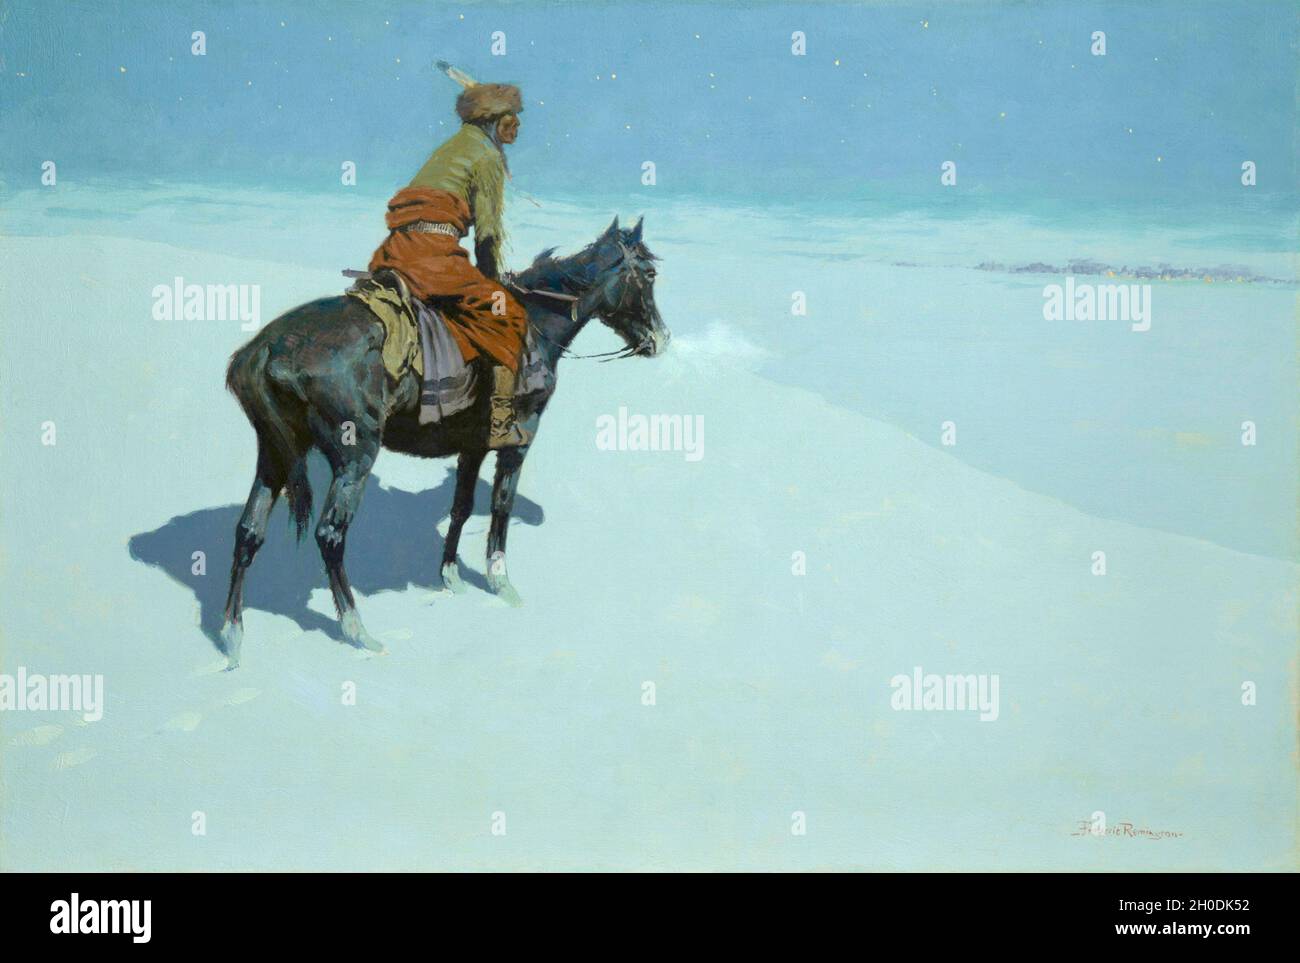 Frederic Remington art - les amis ou ennemis scouts - 1900-1905 - Un cavalier seul voit les cavaliers s'approchant au loin. Banque D'Images